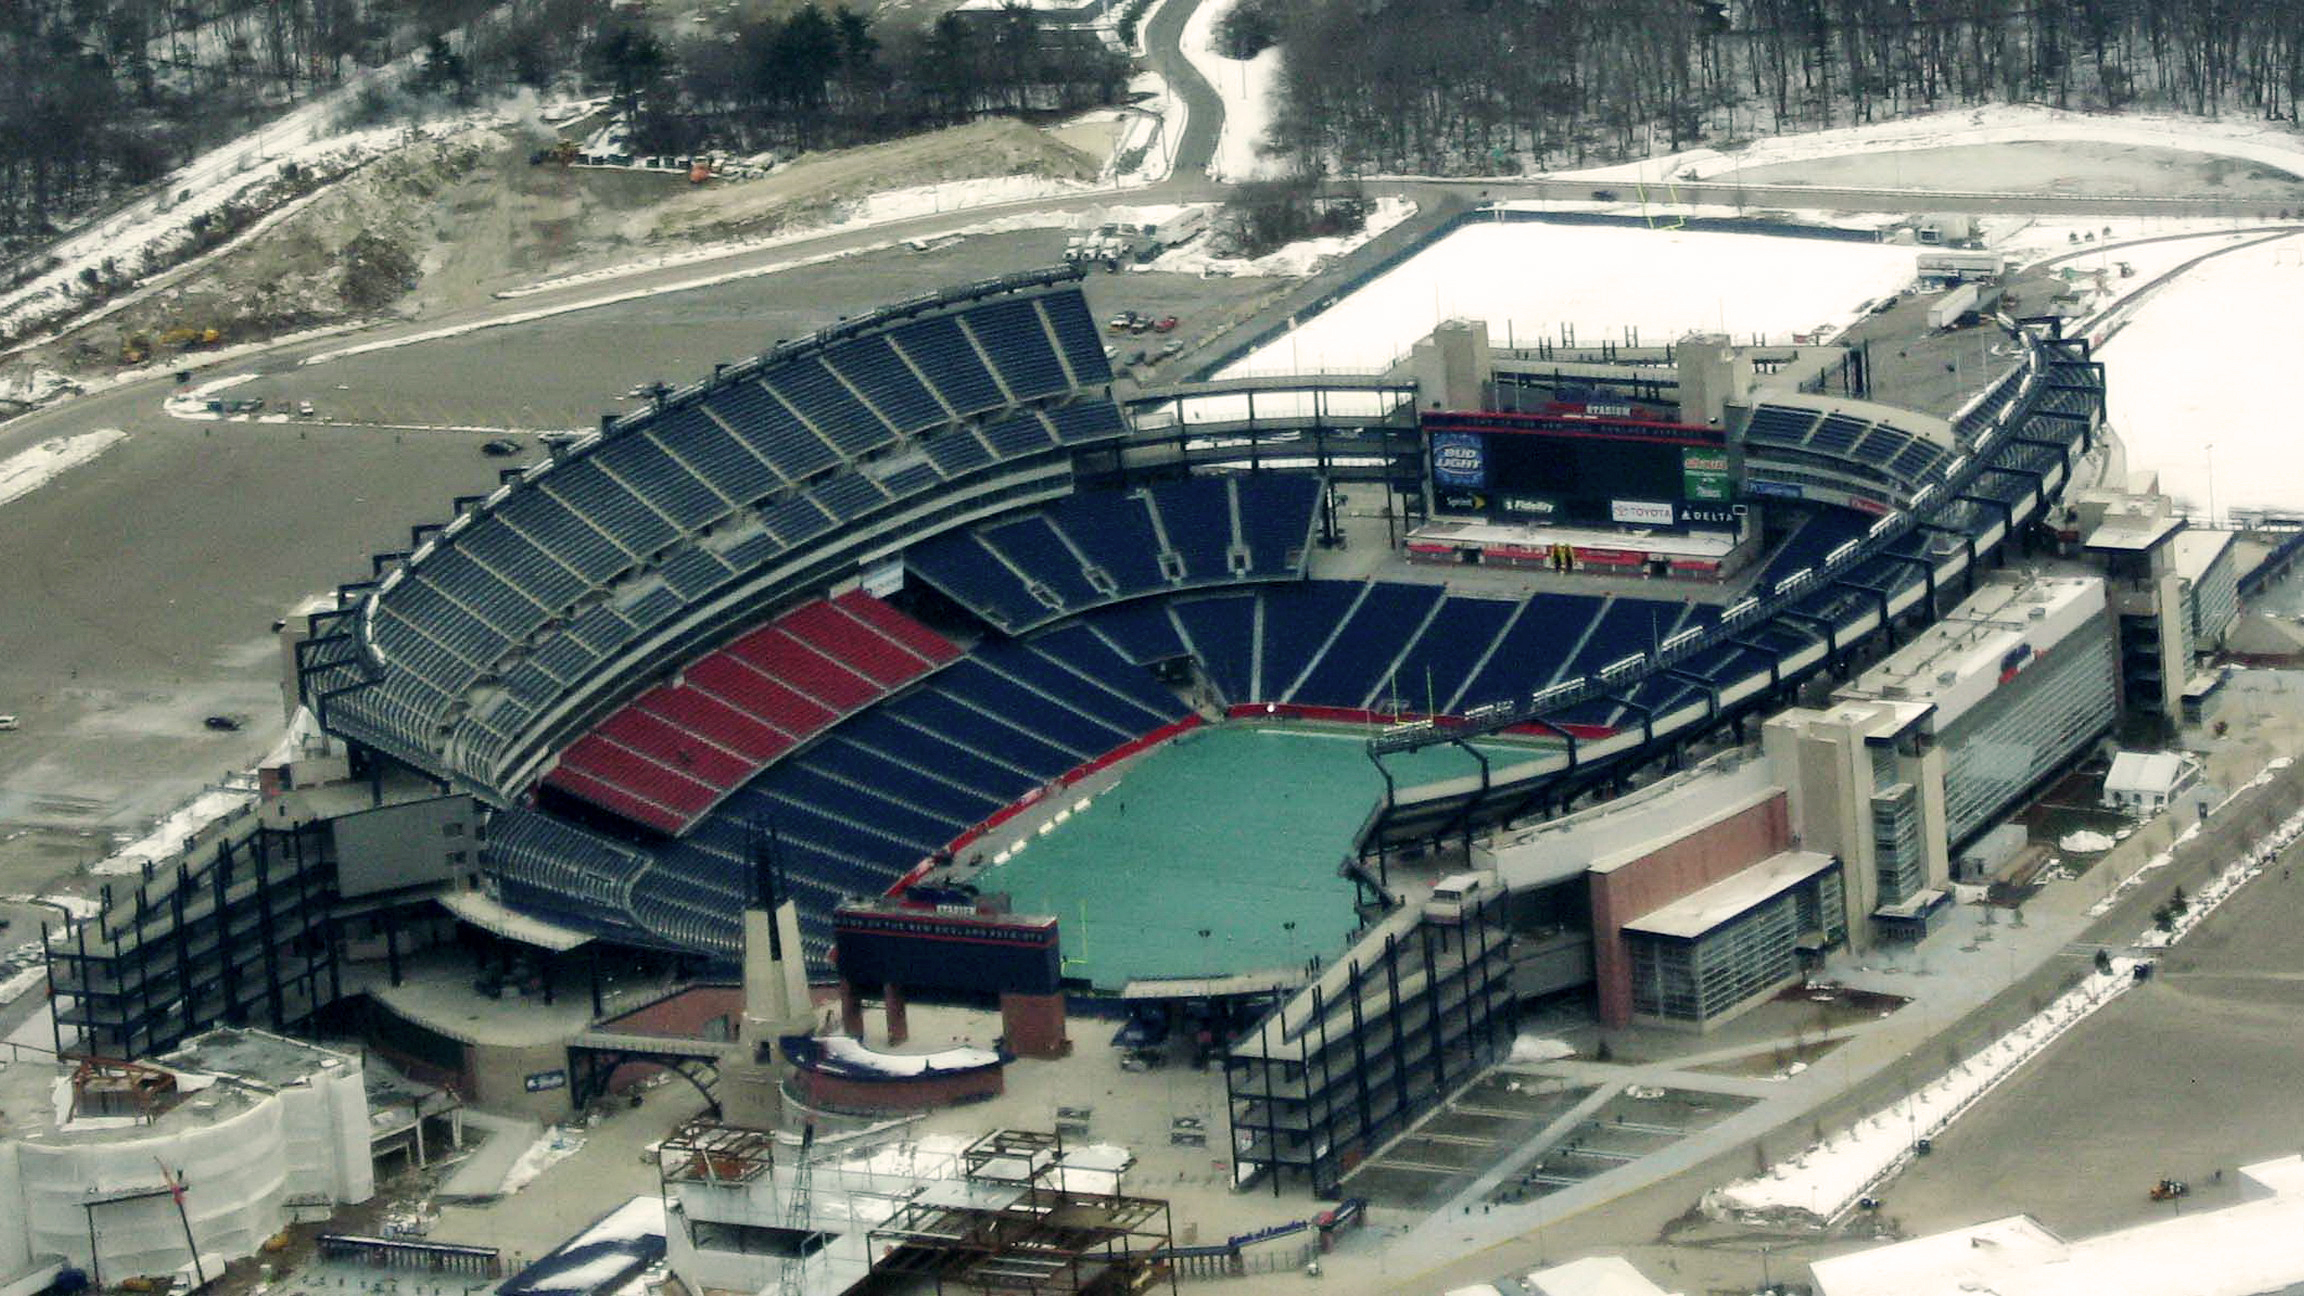 Estádio Gillette na Copa do Mundo 2026 em Boston